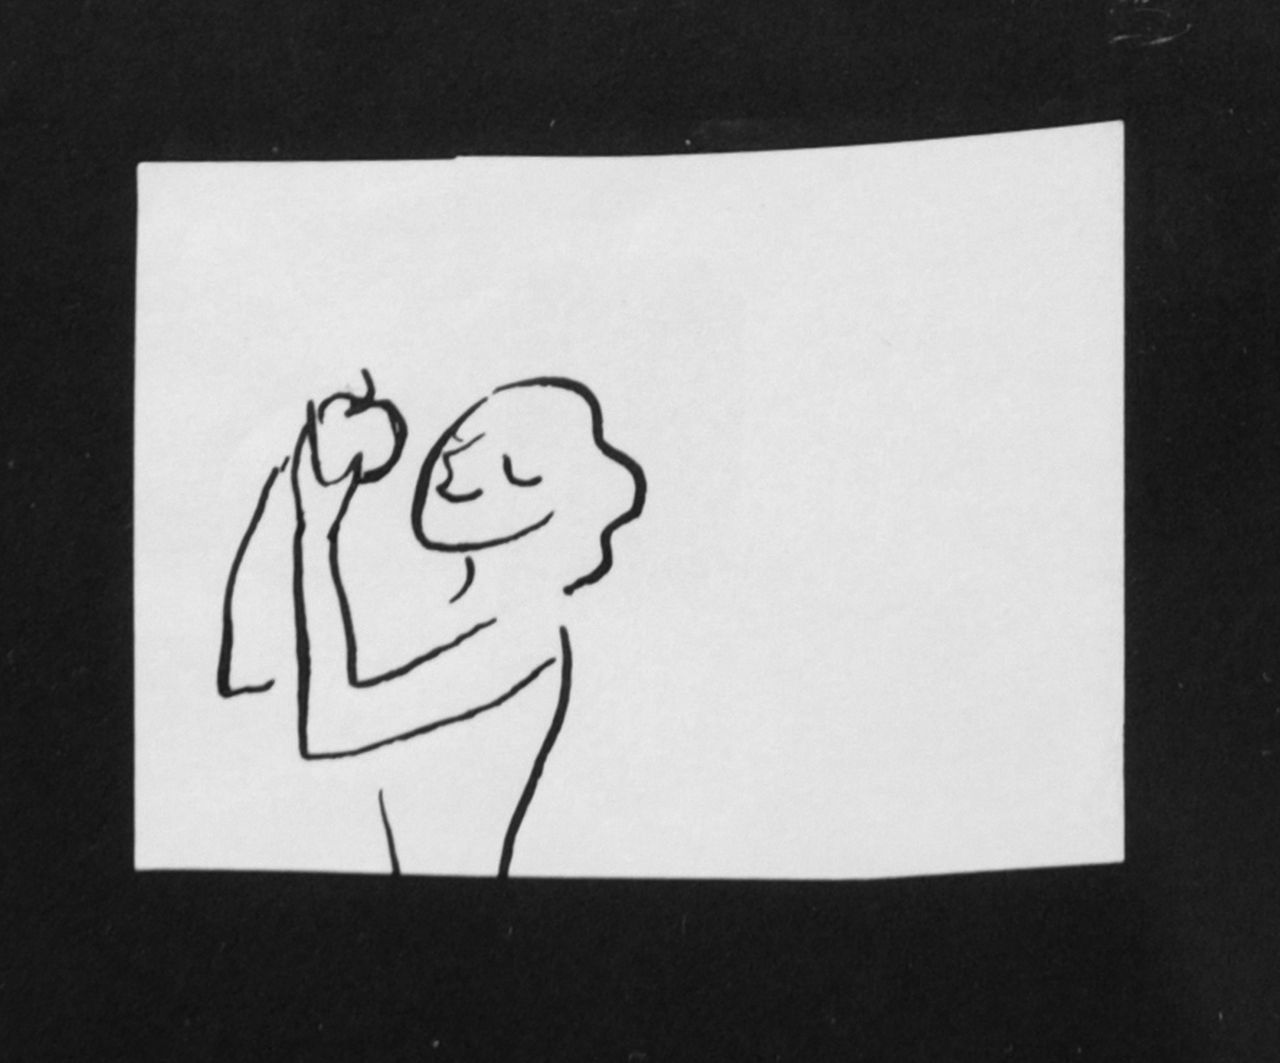 Oranje-Nassau (Prinses Beatrix) B.W.A. van | Beatrix Wilhelmina Armgard van Oranje-Nassau (Prinses Beatrix), Eve with apple, Bleistift und Ausziehtusche auf Papier 5,6 x 8,0 cm, executed August 1960